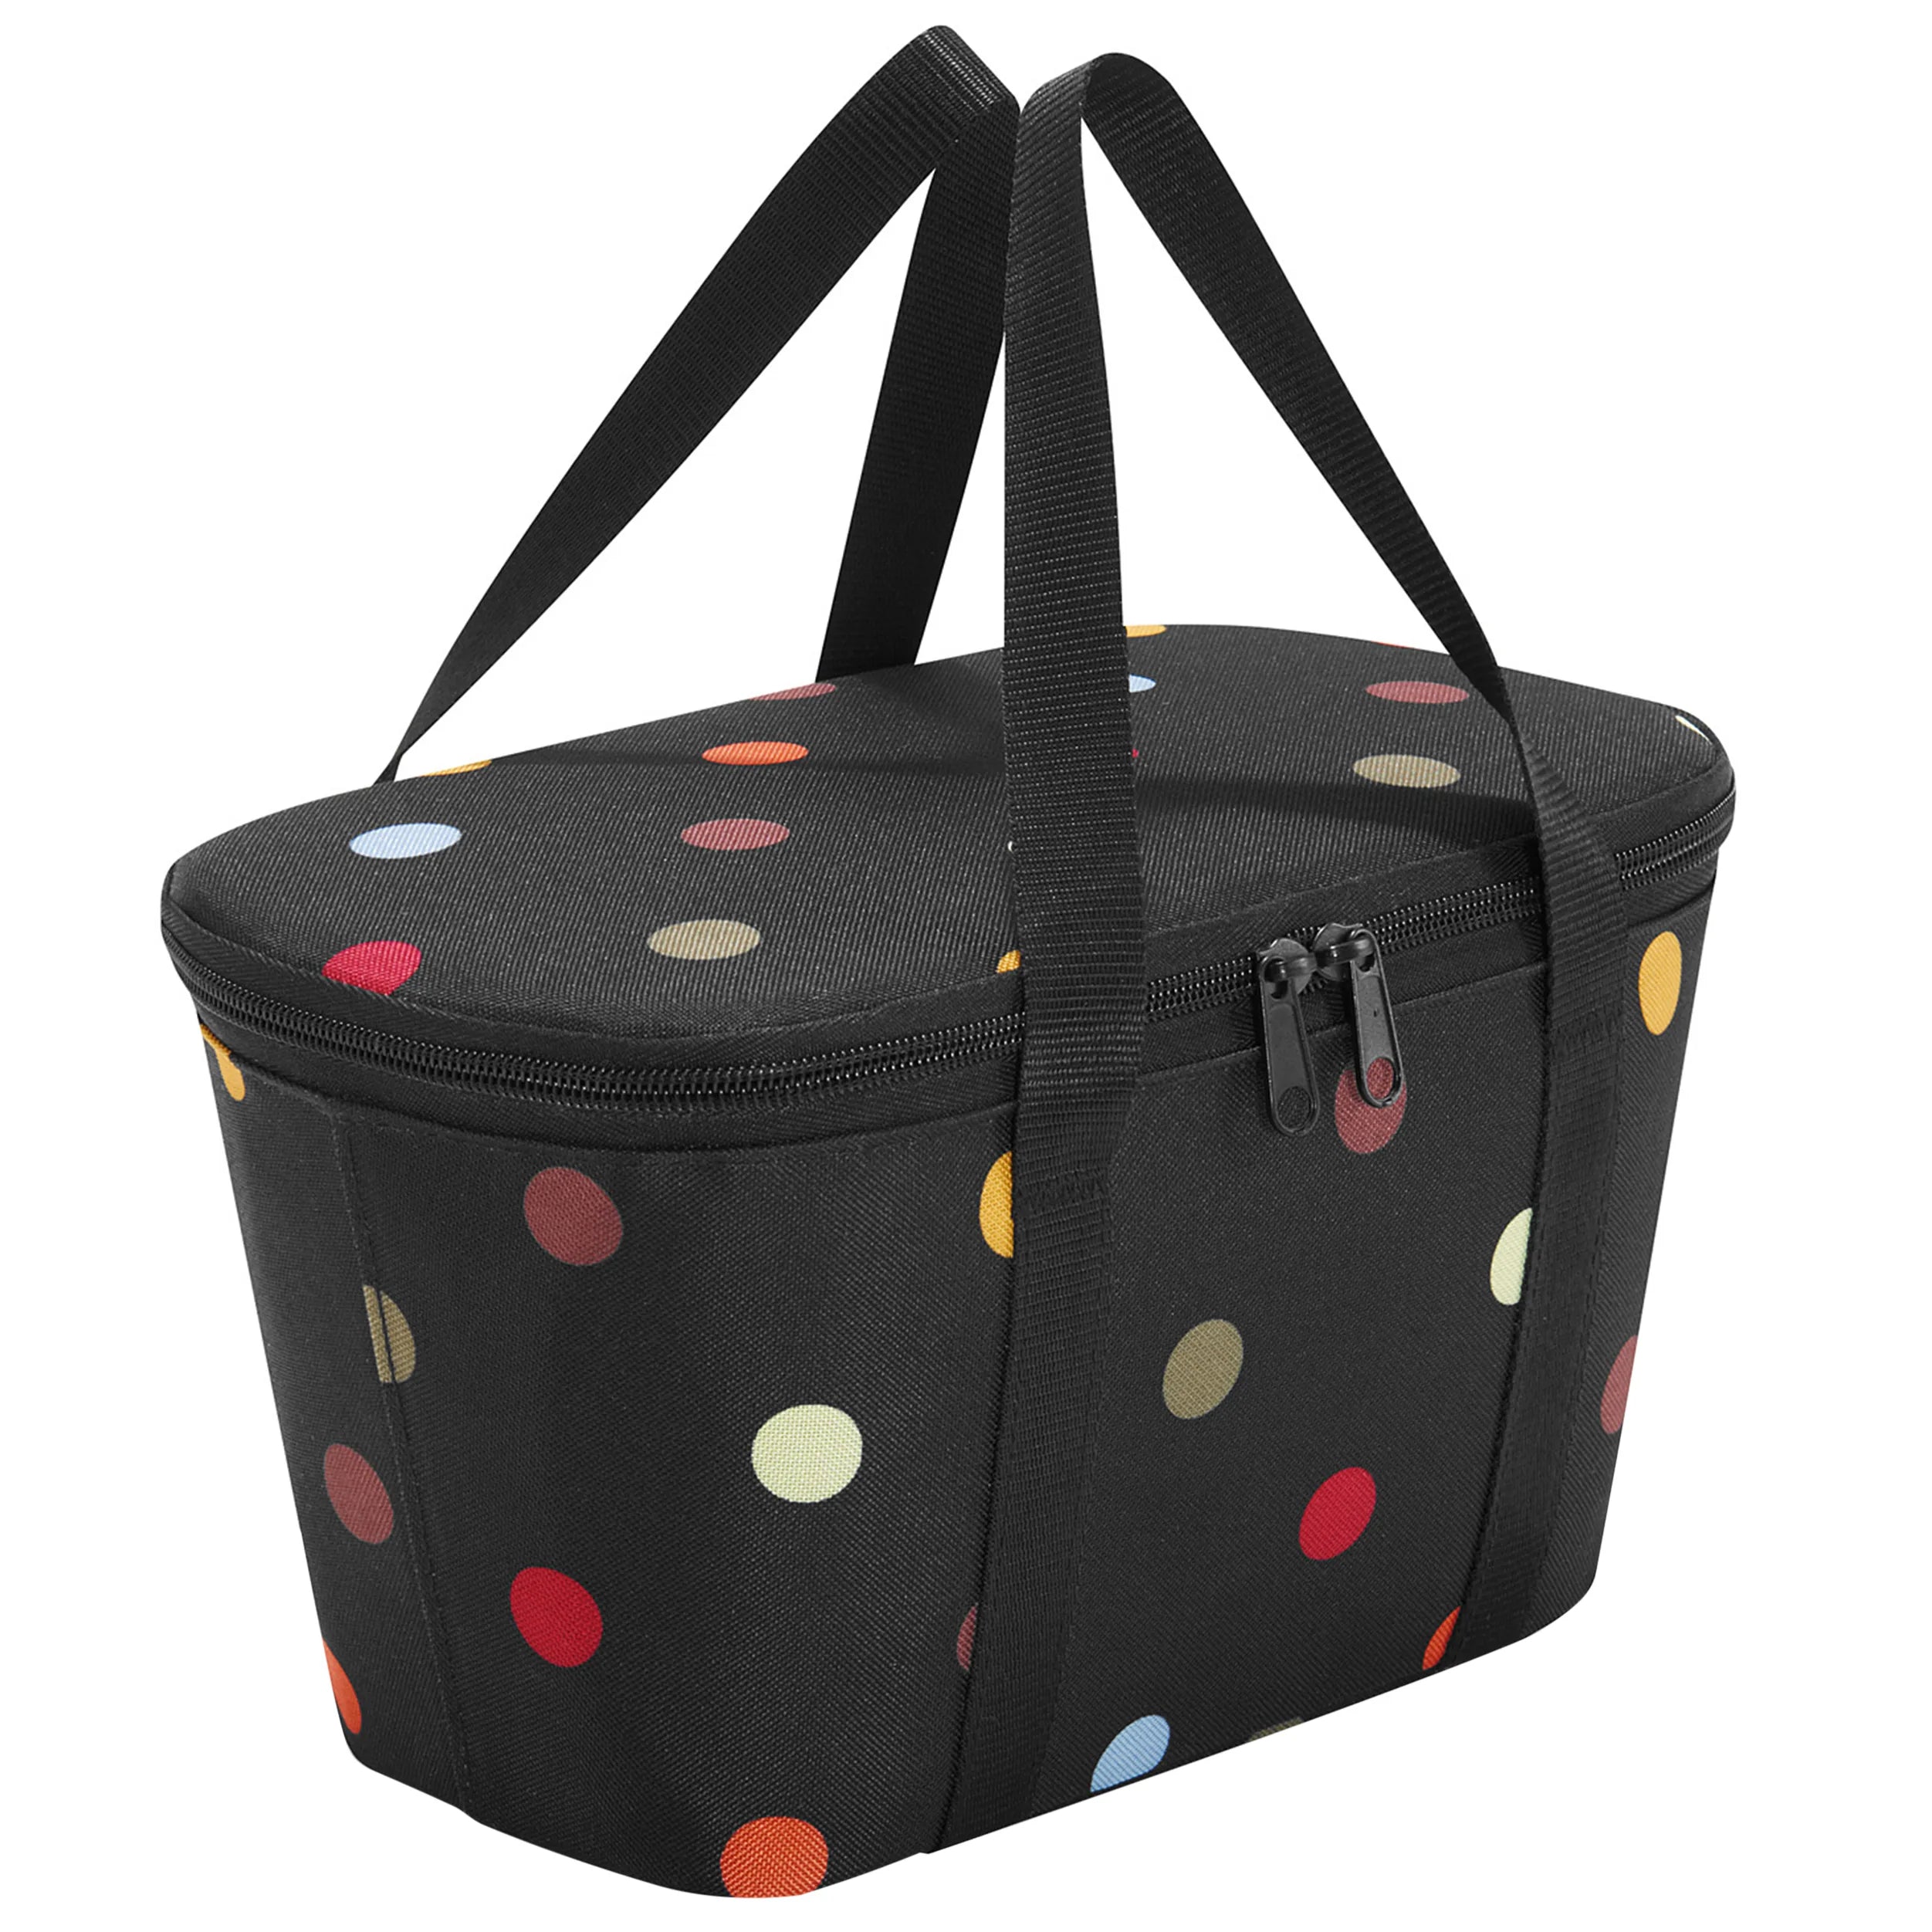 Reisenthel Shopping Coolerbag XS 27 cm - dots